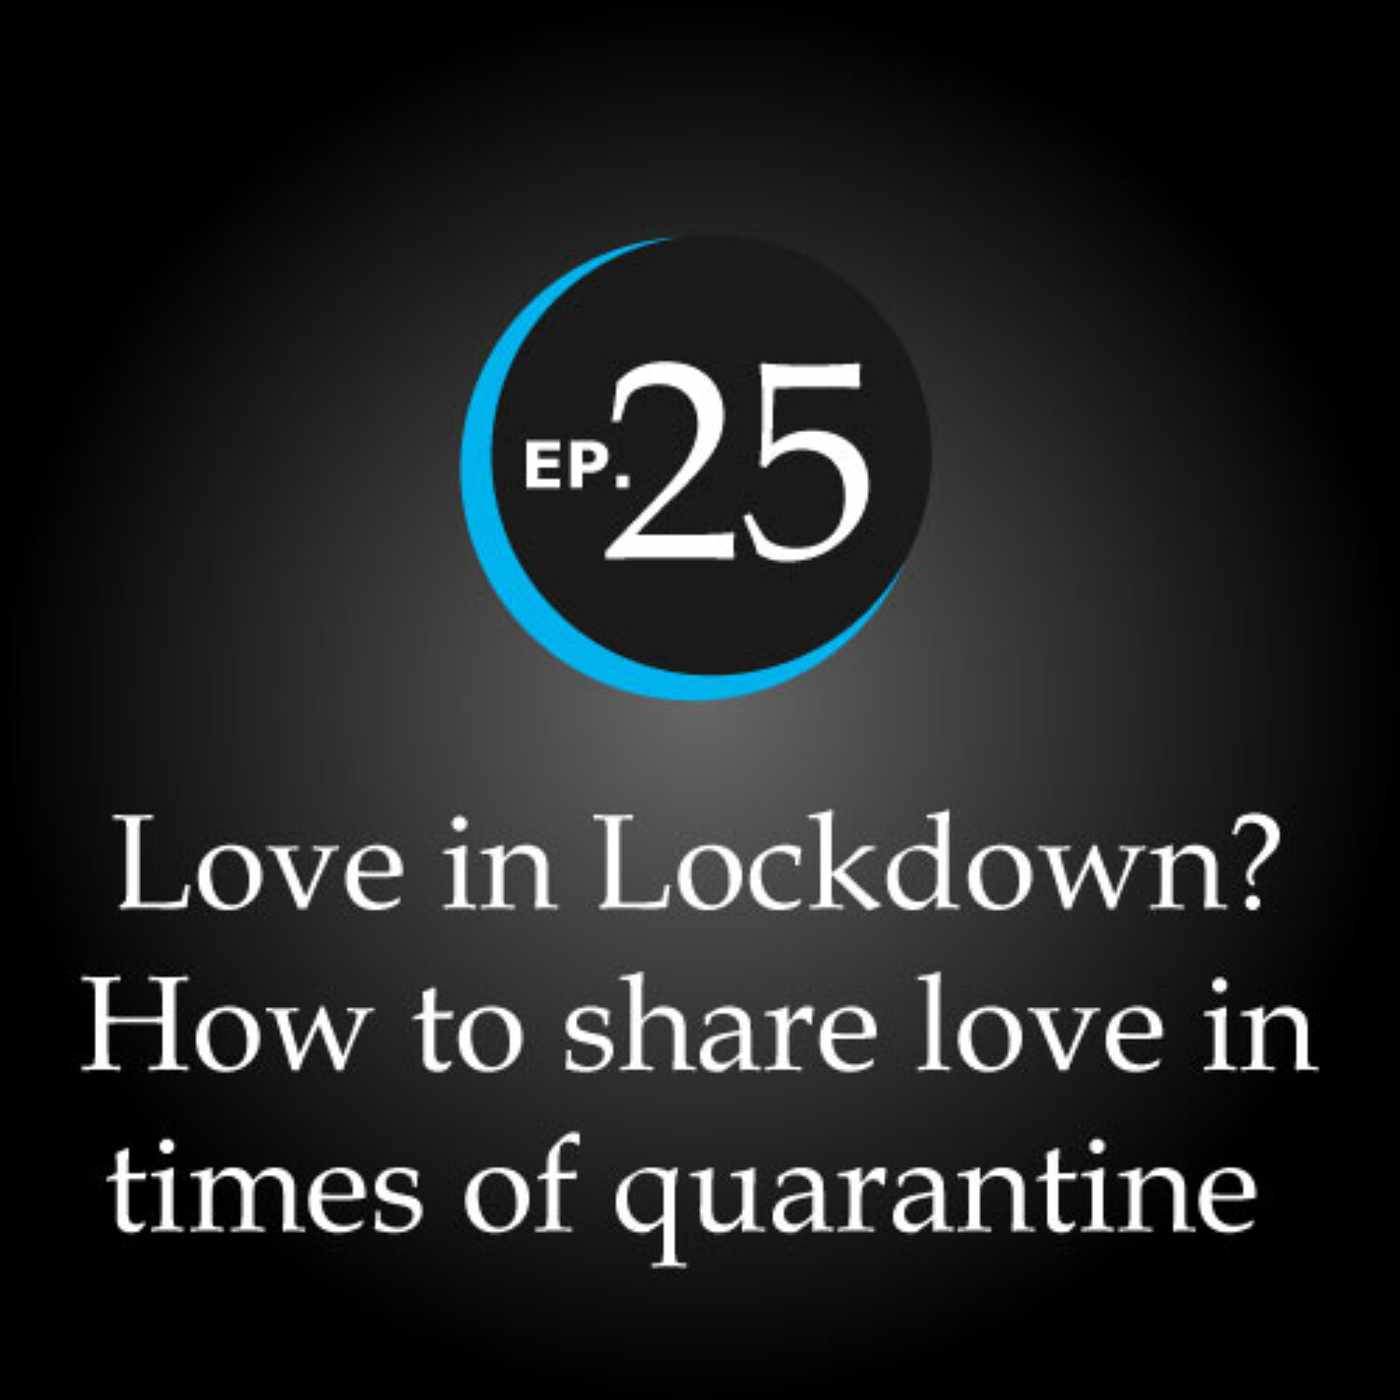 Lockdown love in Love in